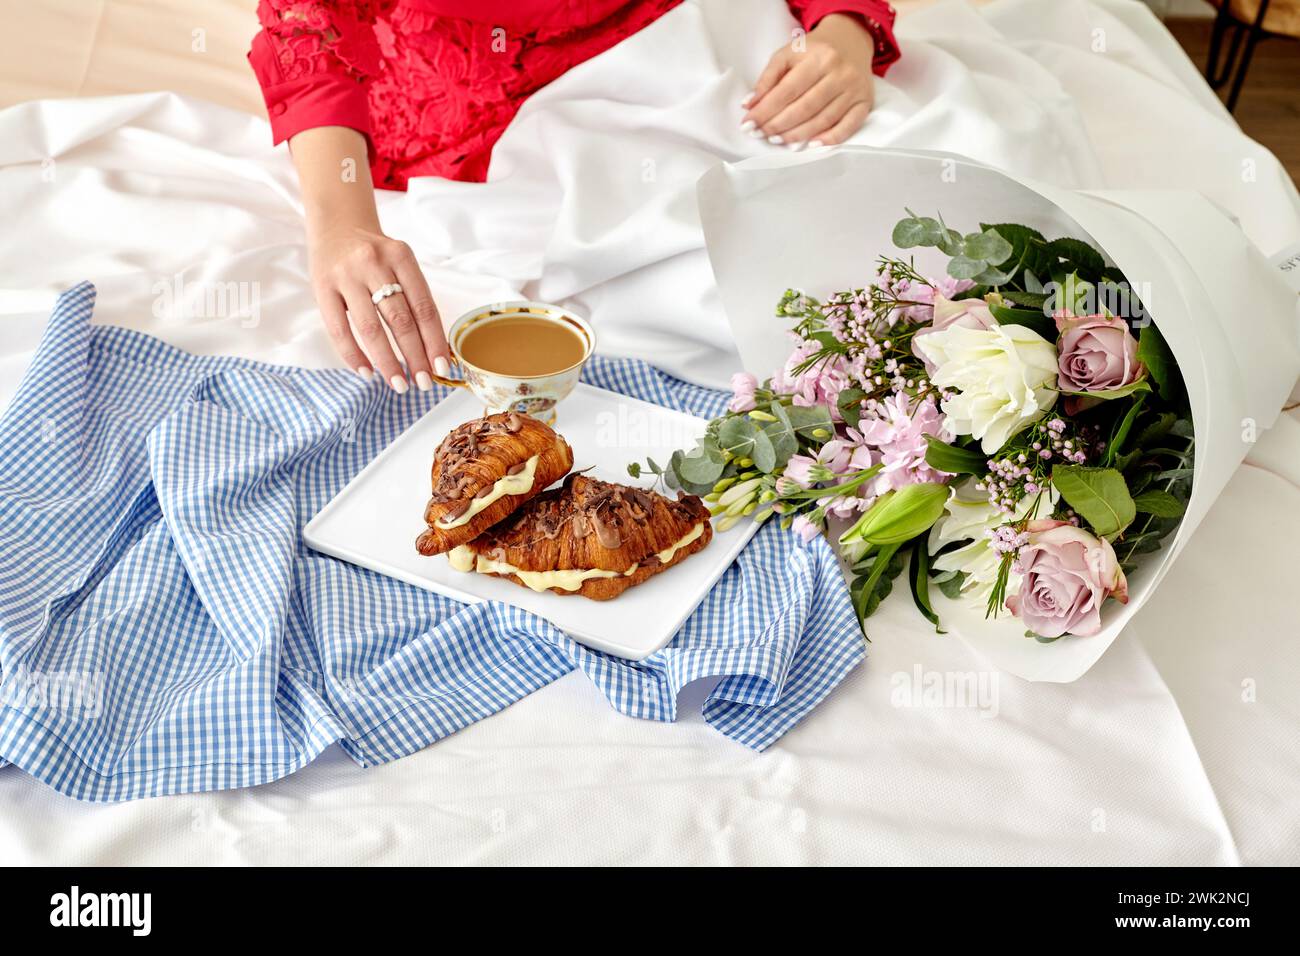 Élégant cadre romantique du matin avec femme en rouge appréciant le petit déjeuner au lit avec des croissants au chocolat français frais remplis de crème anglaise délicate et t Banque D'Images